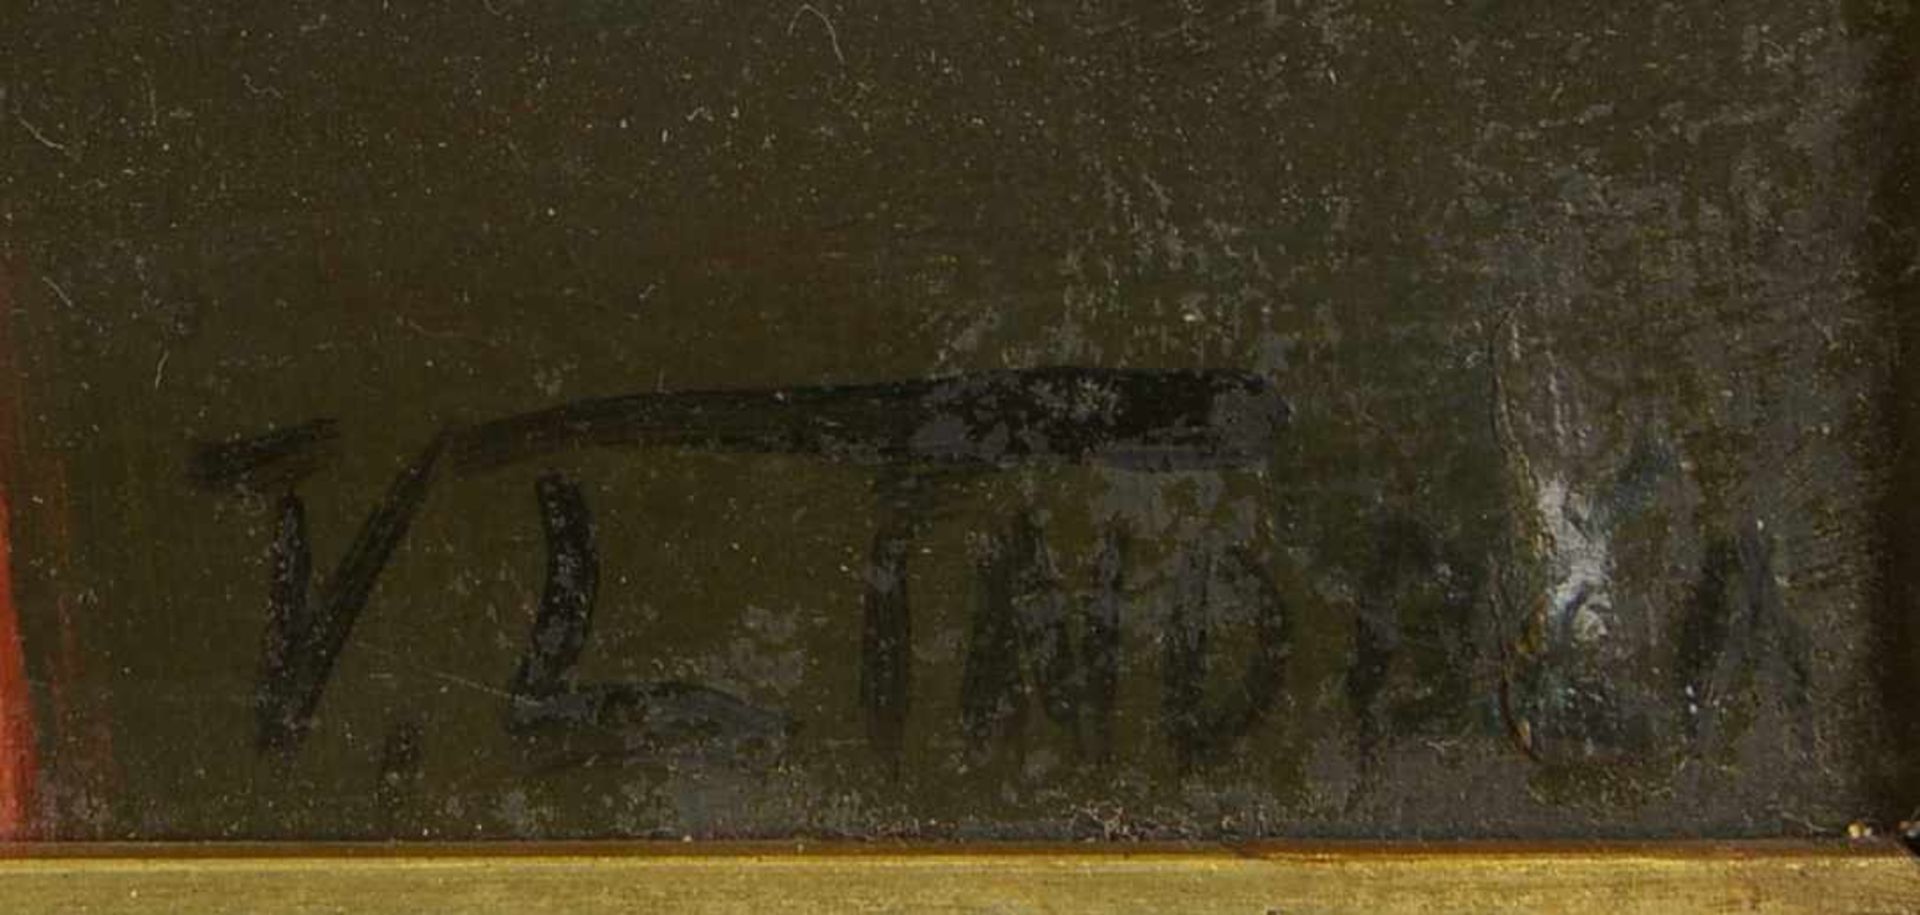 v. Lindblad, 'Mädchen mit zwei Katzen', Öl auf Malpappe, unten rechts signiert; Maße 31 x 21 cm - Bild 2 aus 2